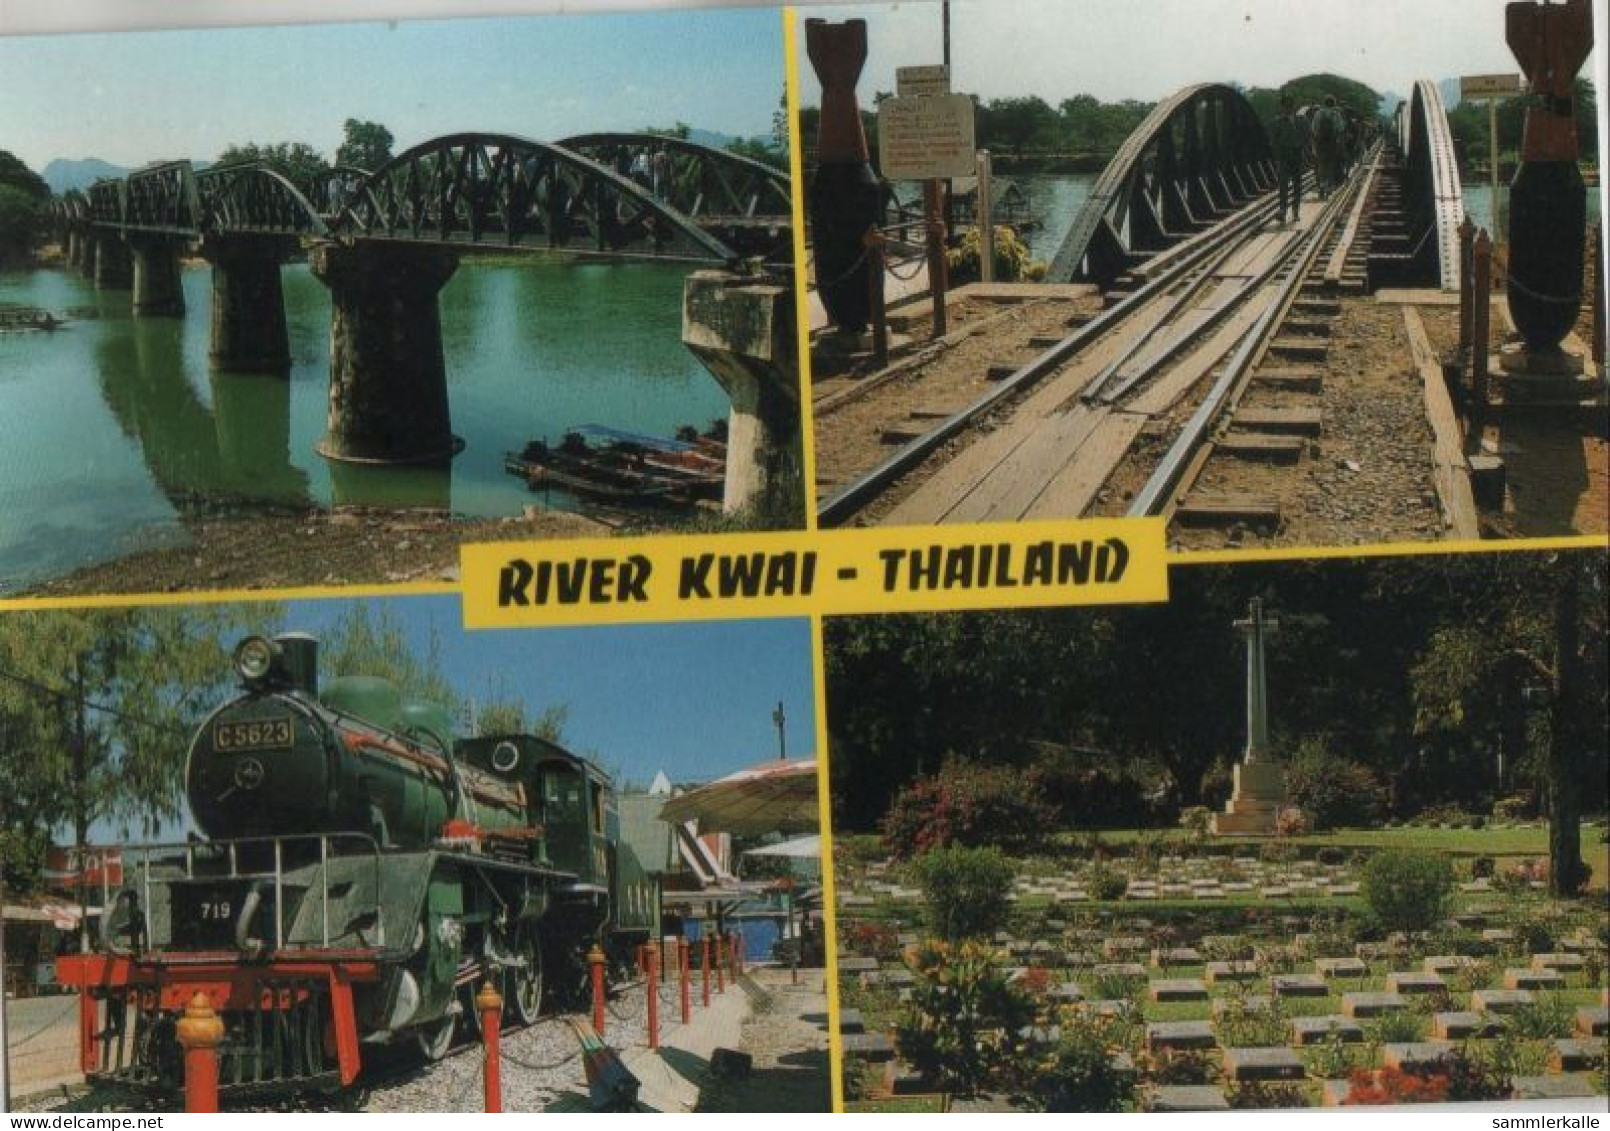 121103 - Thailand - Thailand - River Kwai - Thailand